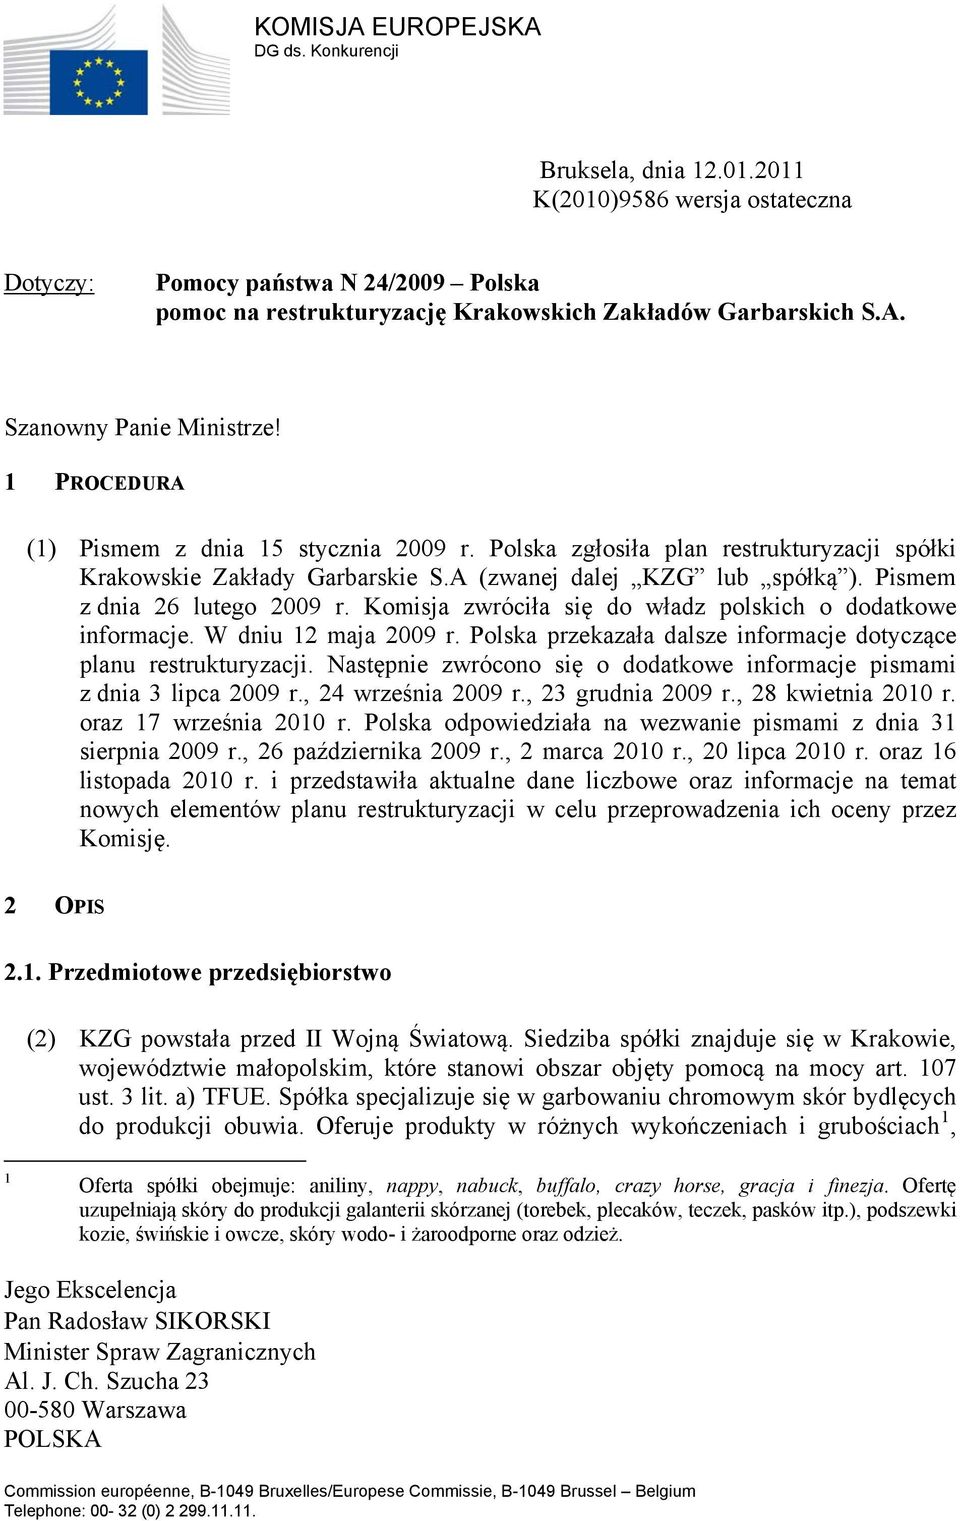 Komisja zwróciła się do władz polskich o dodatkowe informacje. W dniu 12 maja 2009 r. Polska przekazała dalsze informacje dotyczące planu restrukturyzacji.